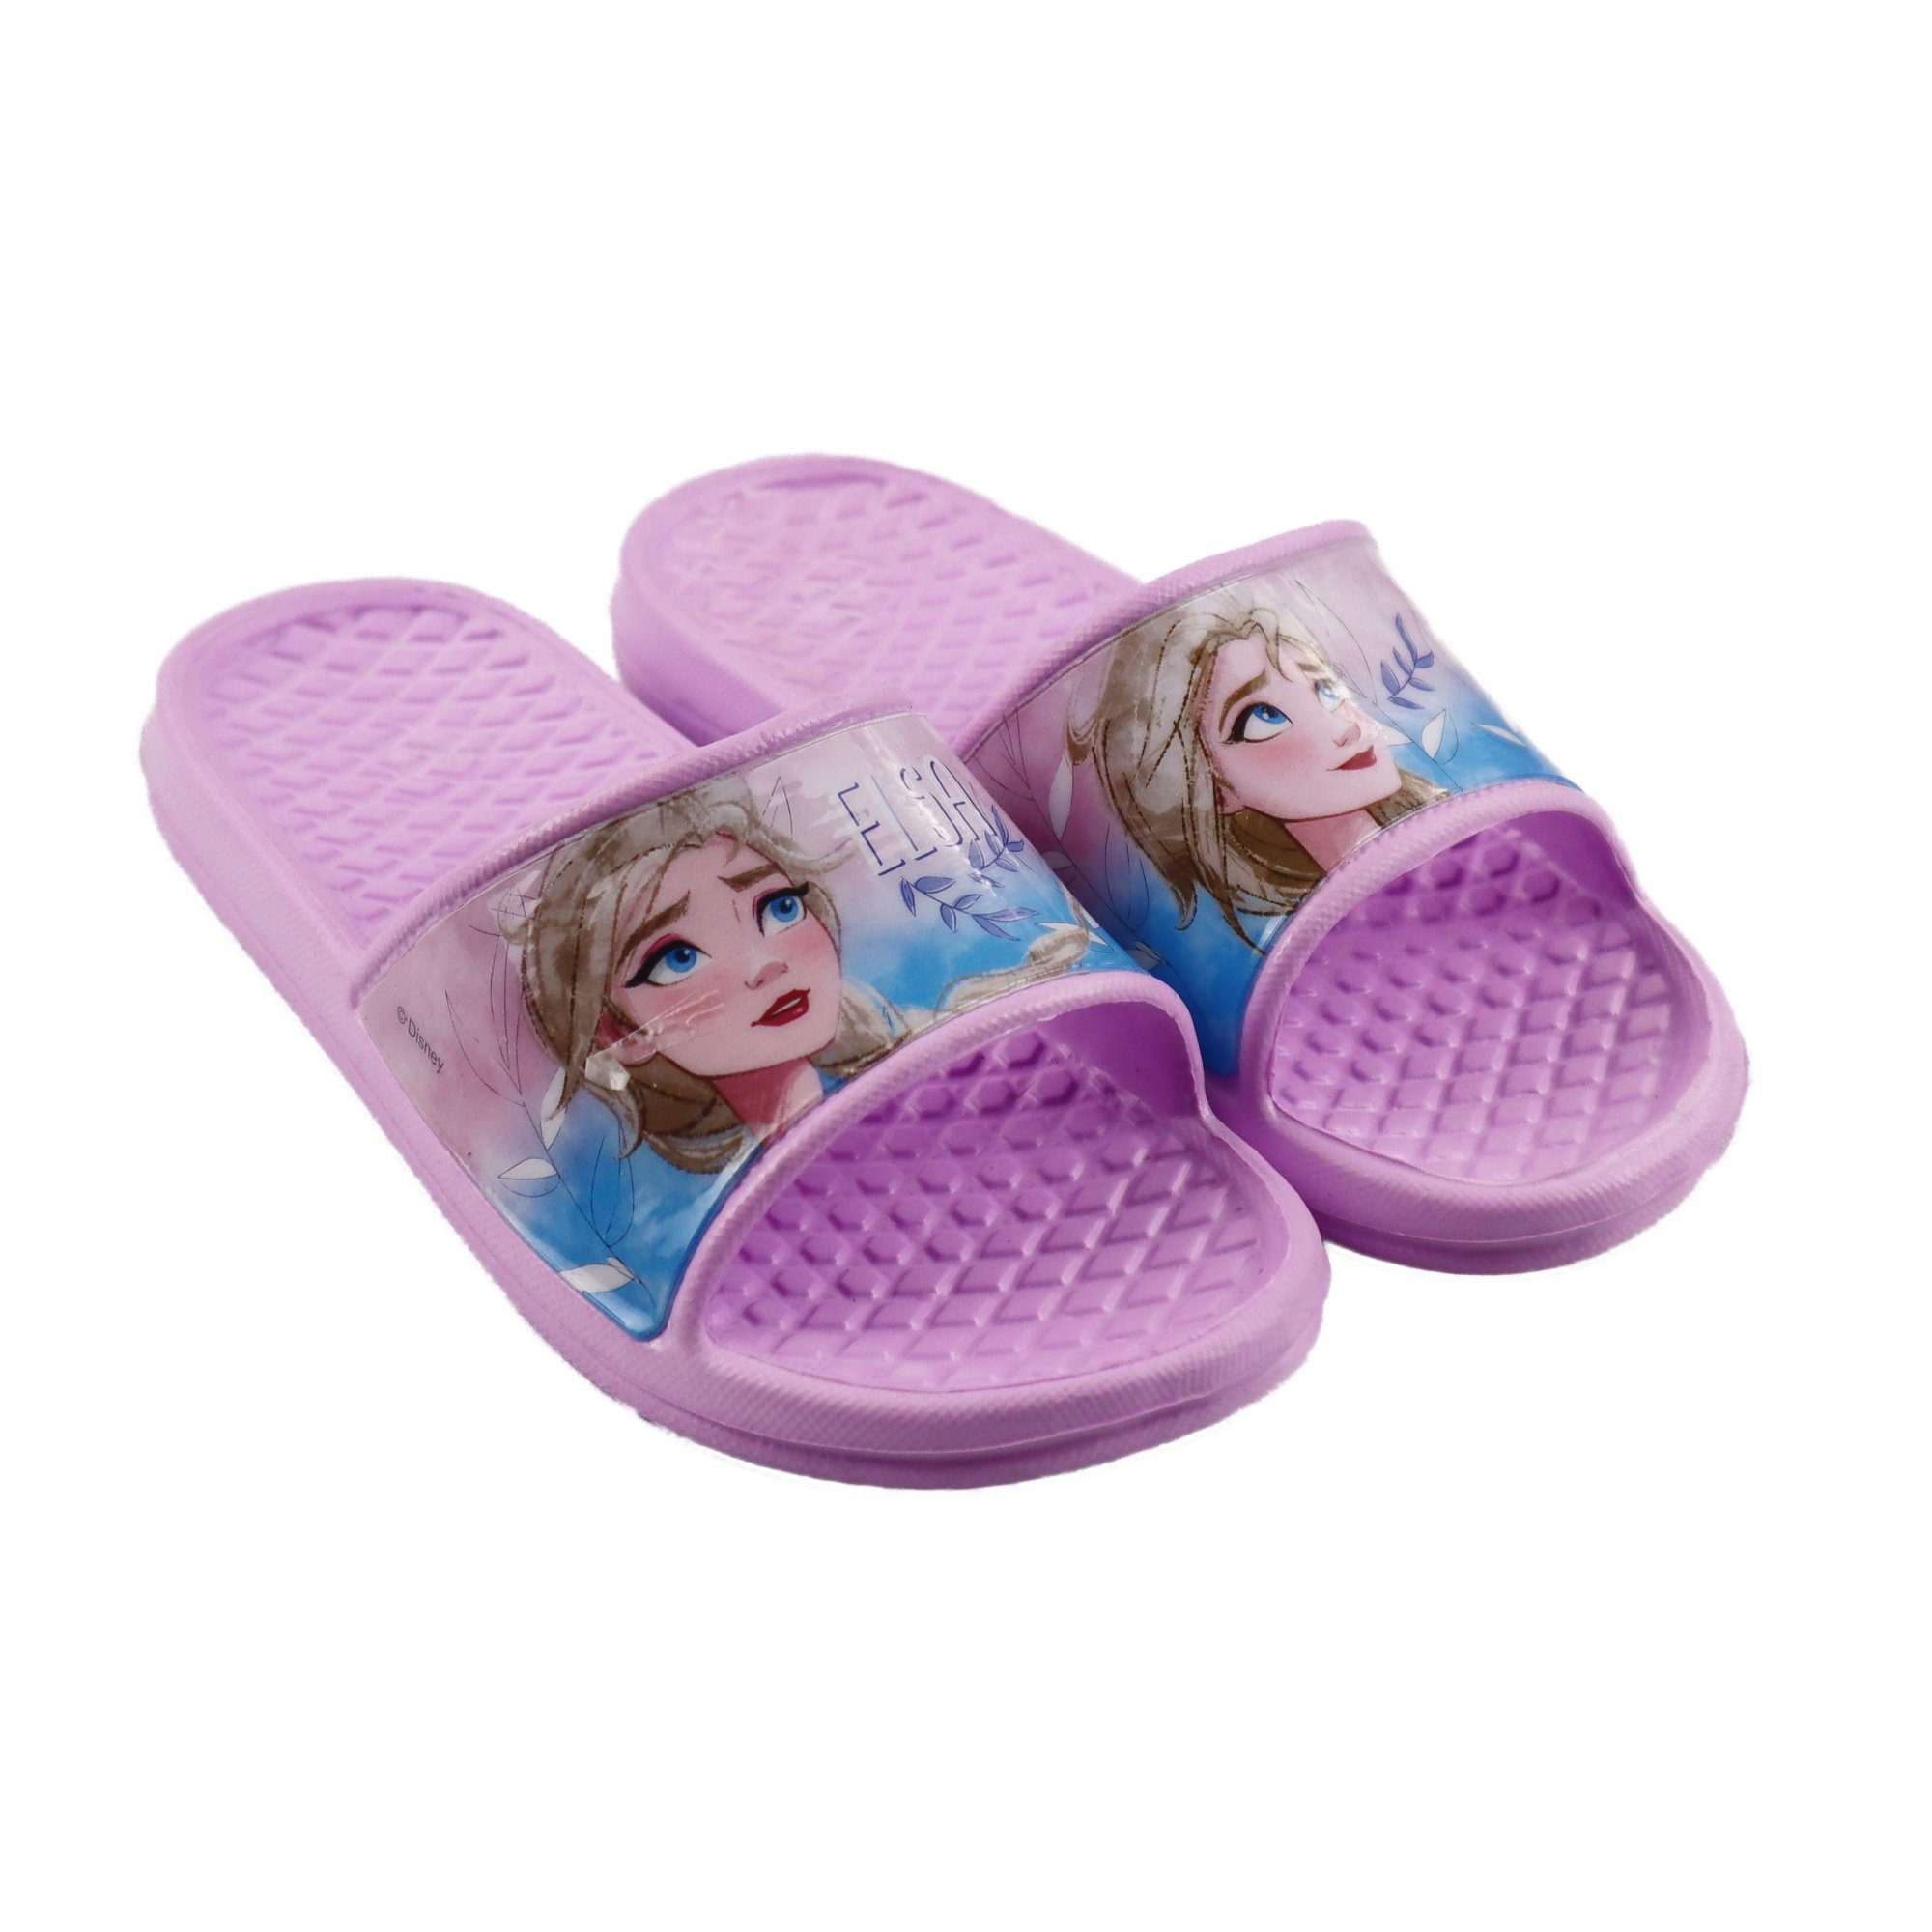 Disney Frozen »Die Eiskönigin Elsa Mädchen Kinder Sandalen« Sandale Gr. 24  bis 31, Lila oder Blau online kaufen | OTTO